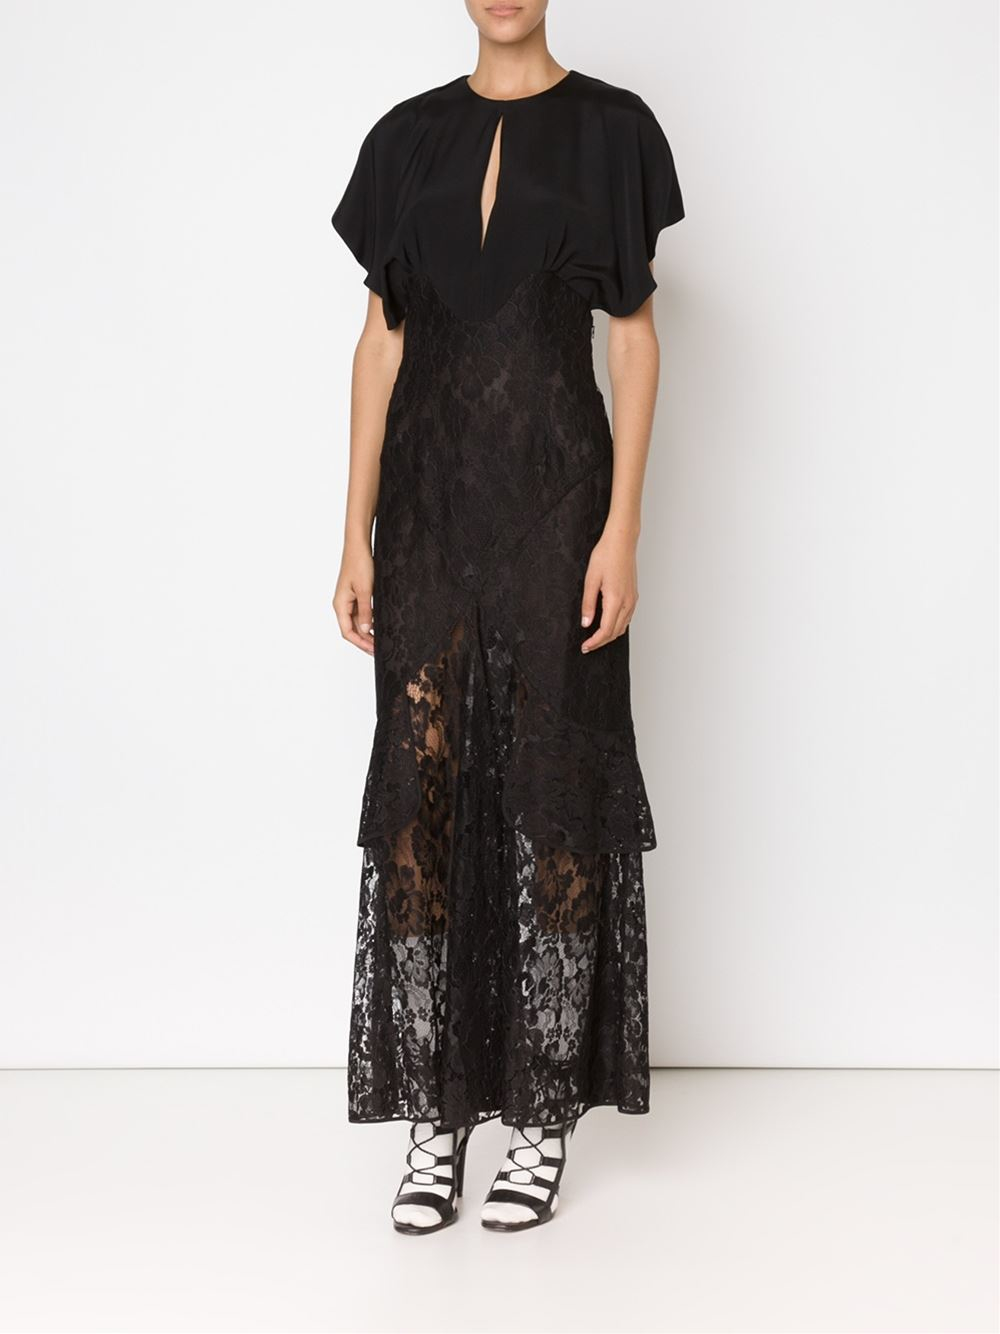 Alessandra rich Long Lace Dress in Black | Lyst